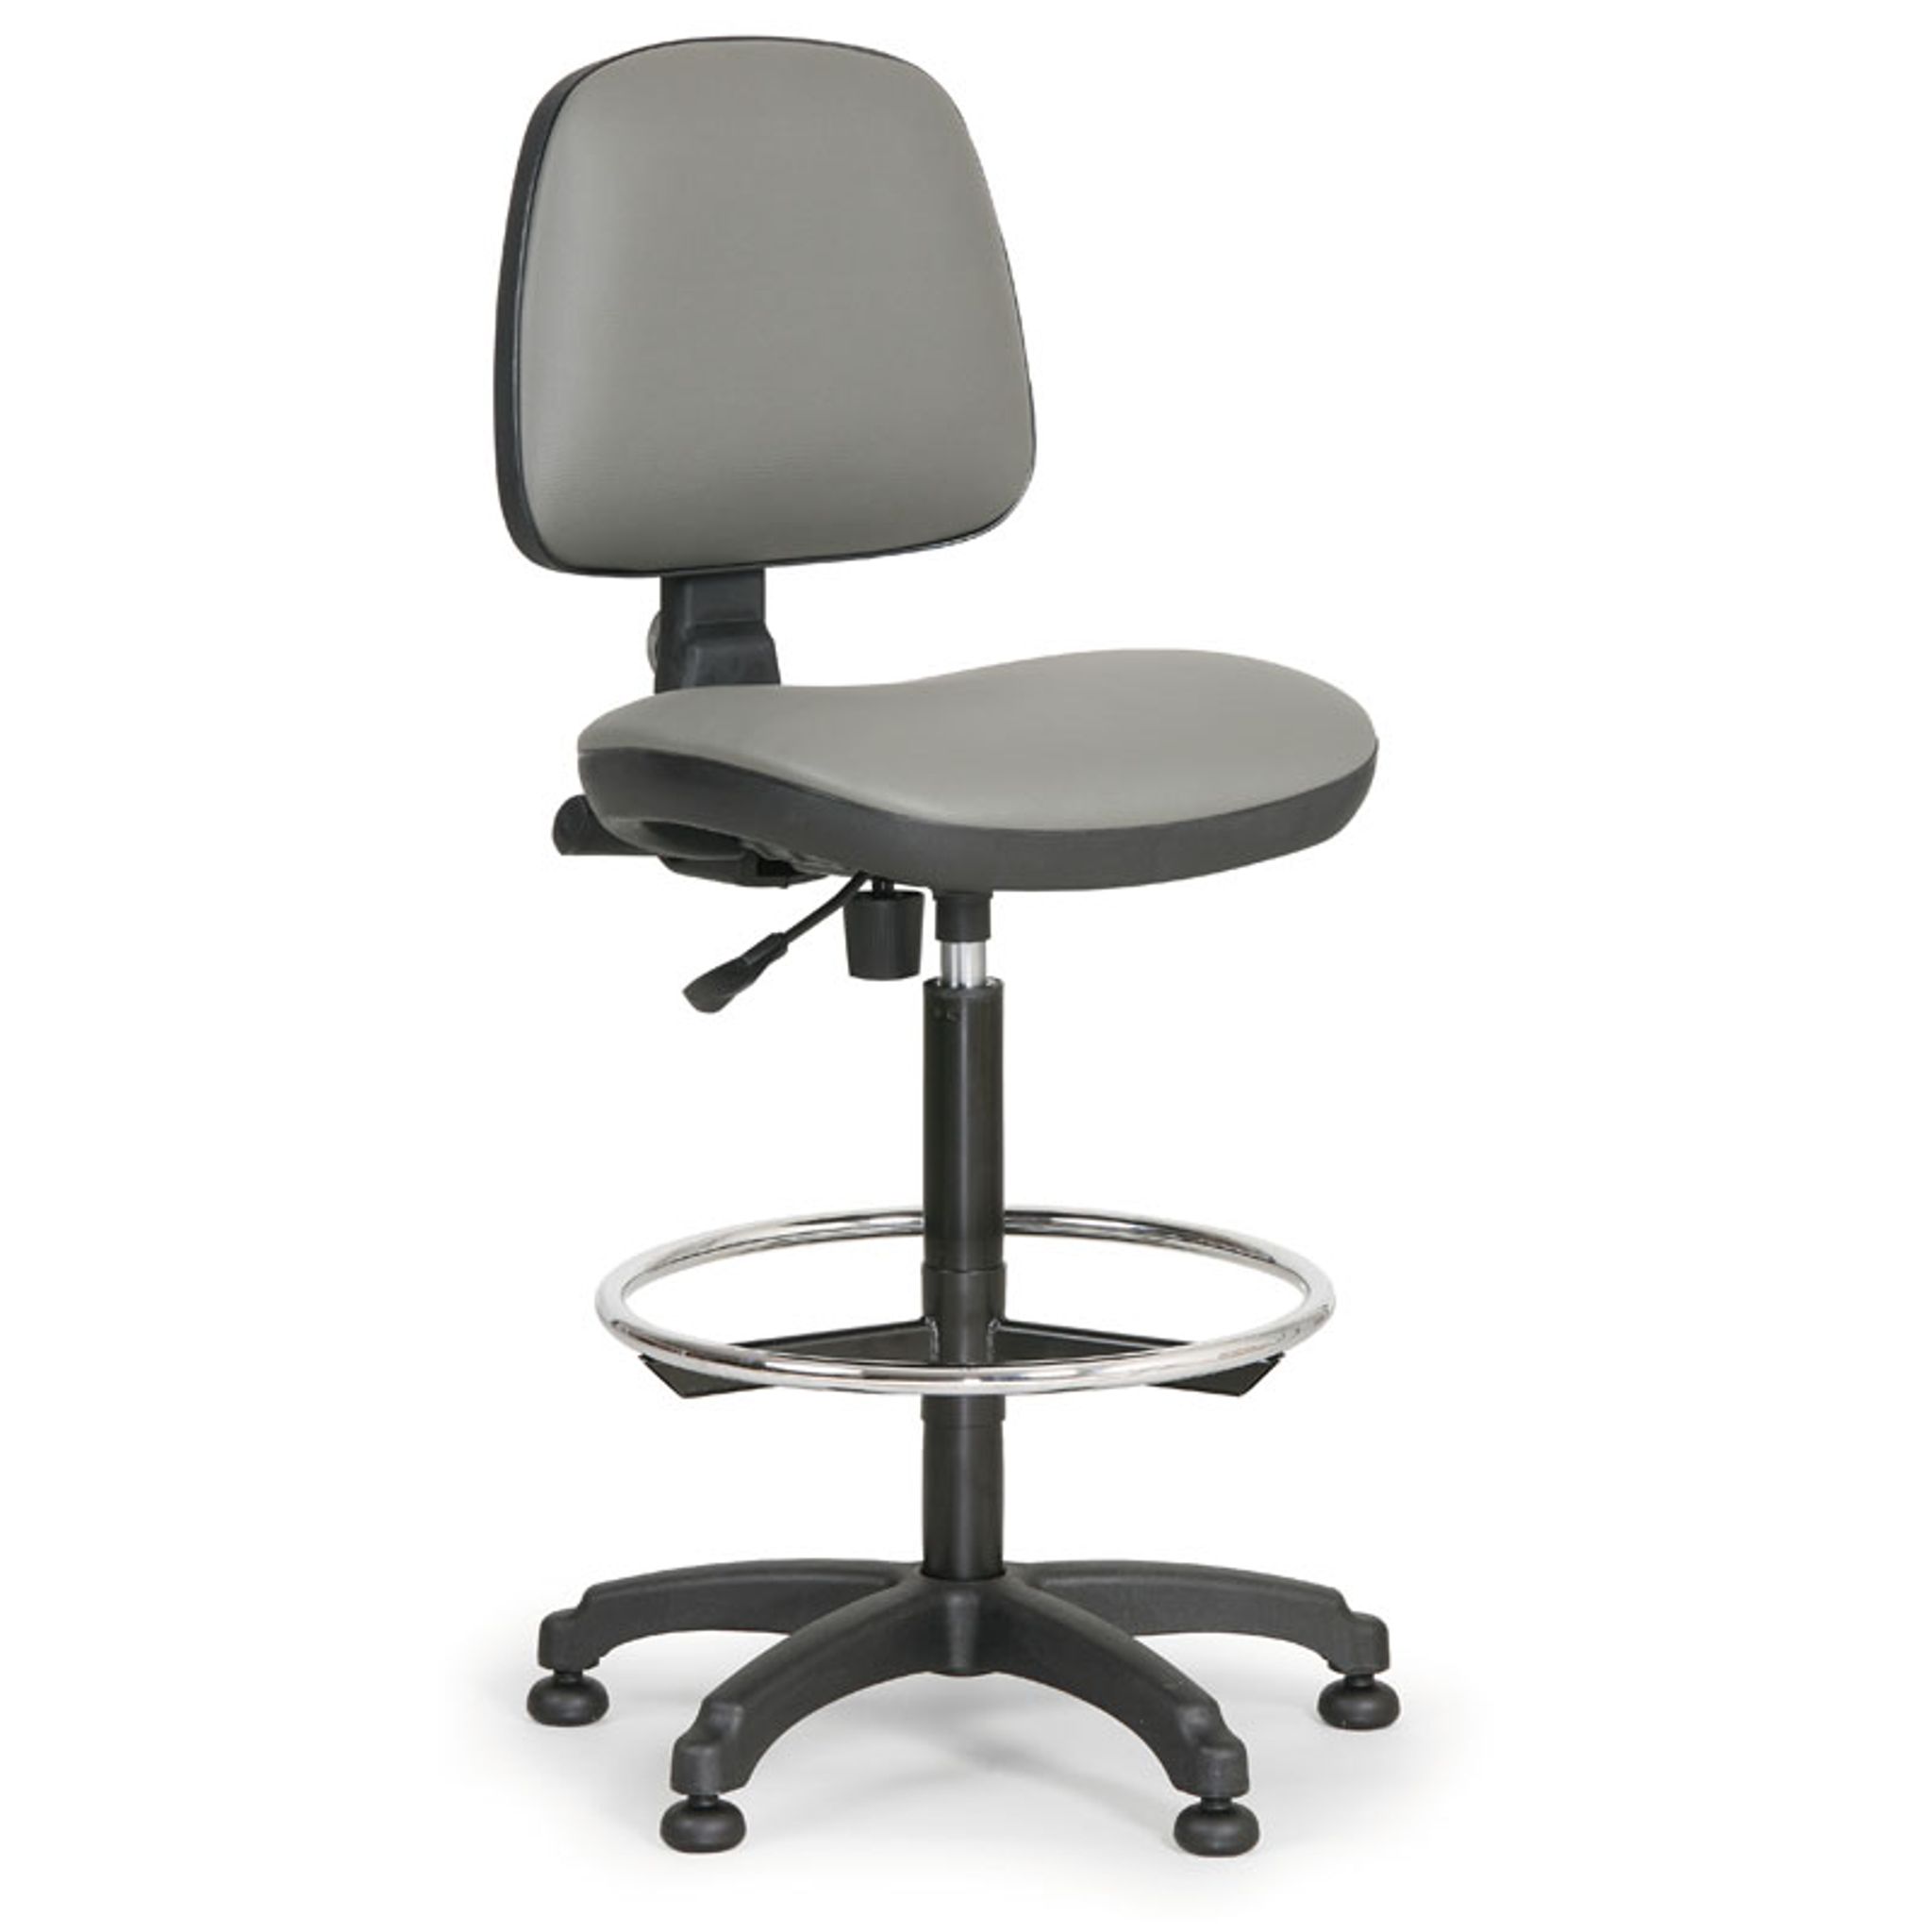 Pracovní židle s kluzáky MILANO bez područek, permanentní kontakt, opěrný kruh